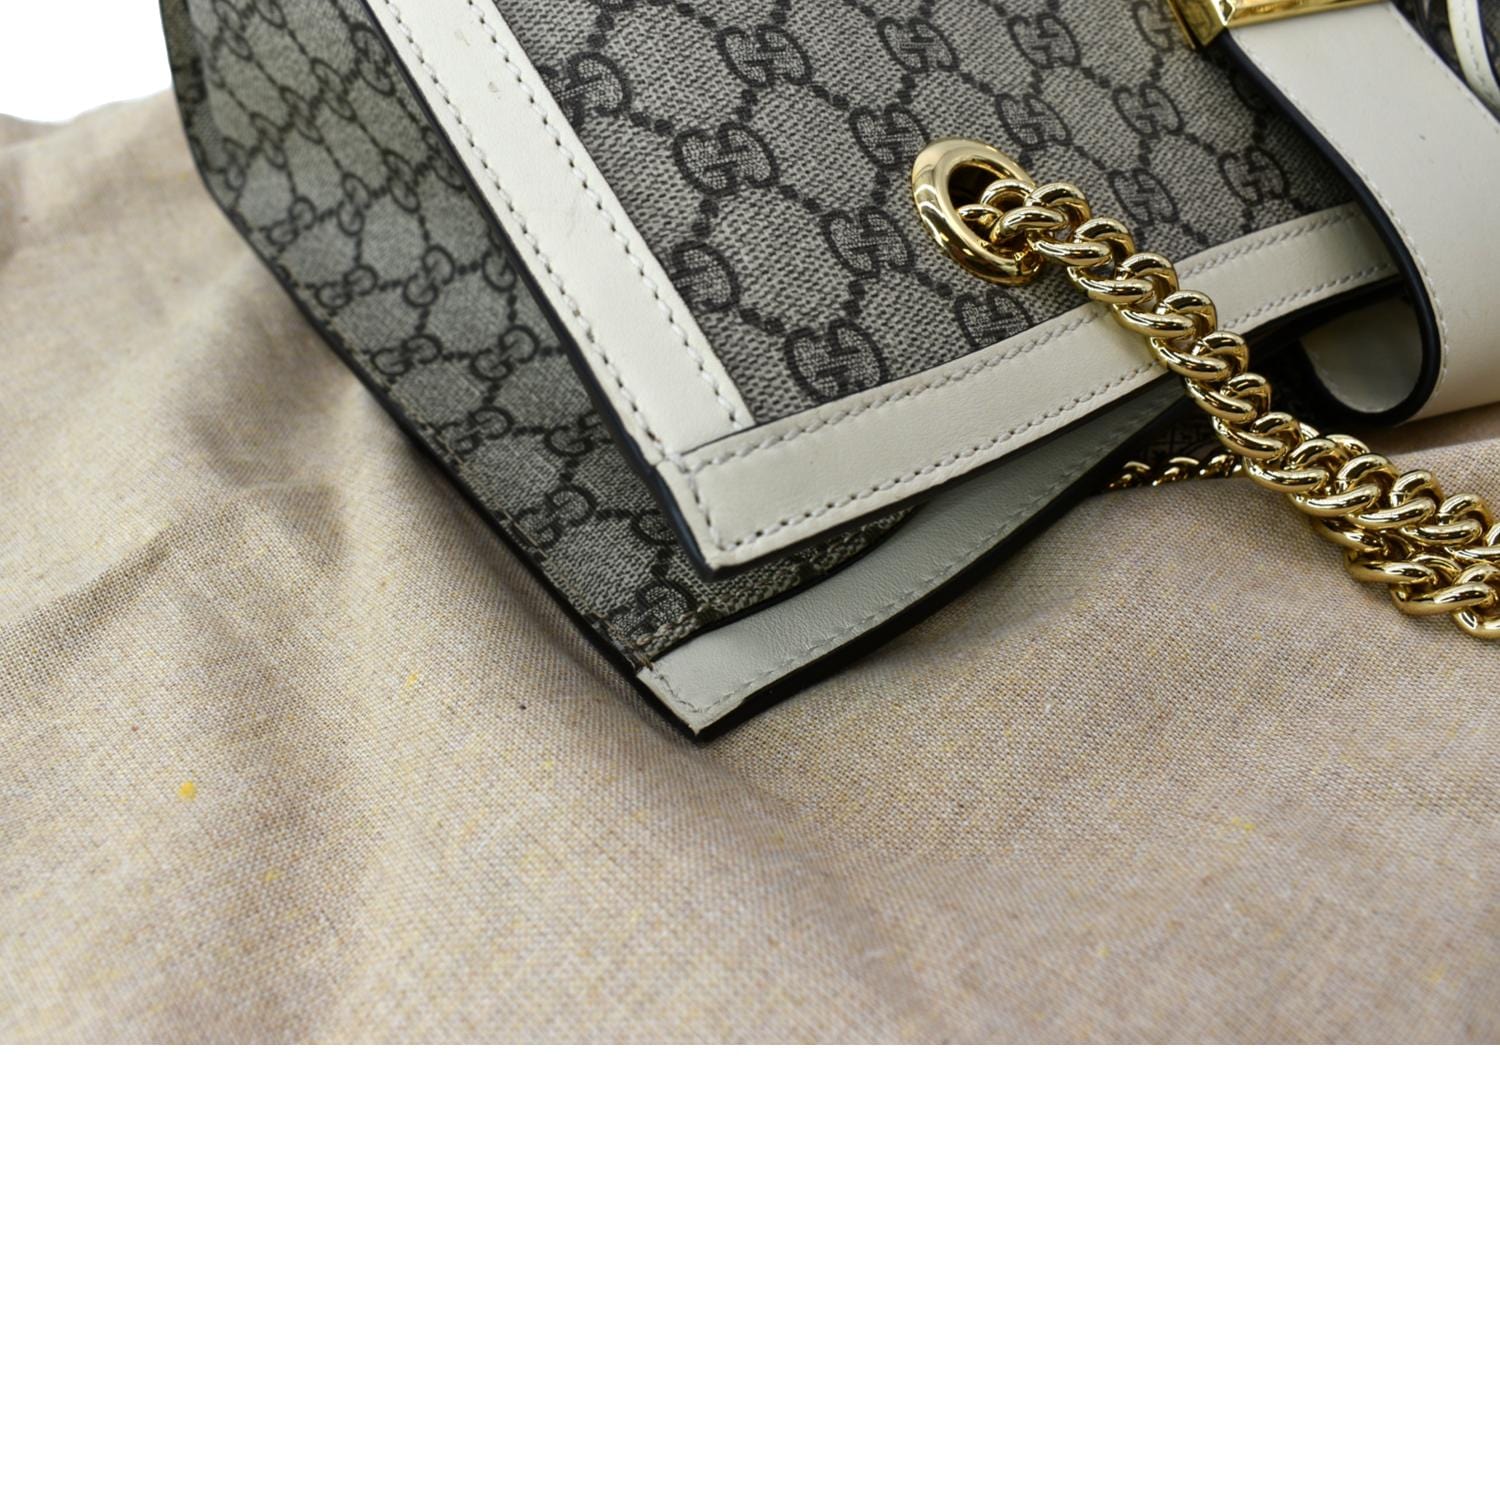 Padlock GG Supreme Shoulder Bag in Beige - Gucci